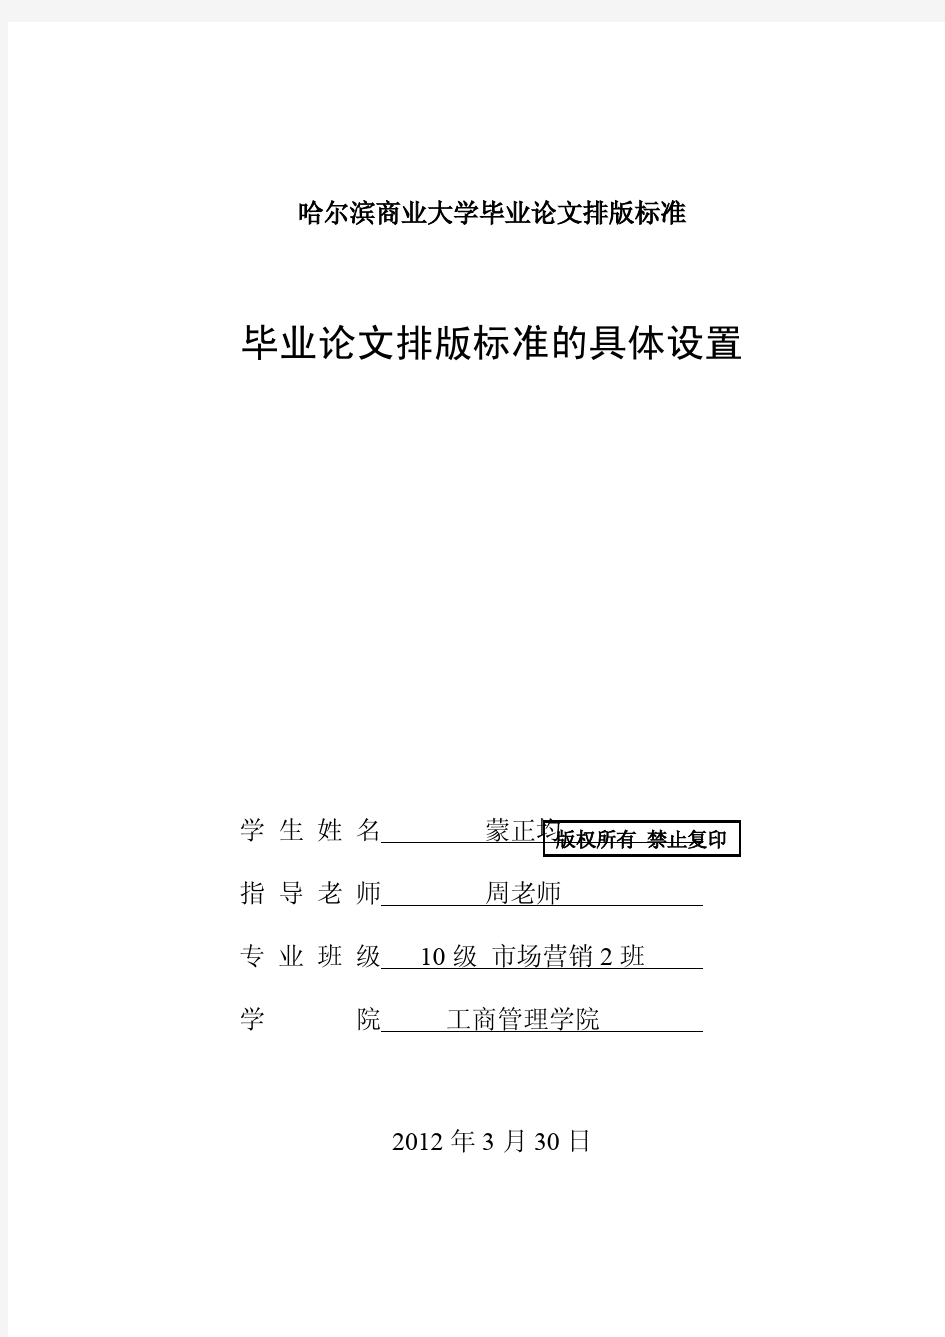 哈尔滨商业大学毕业论文排版标准的具体设置(权限版)